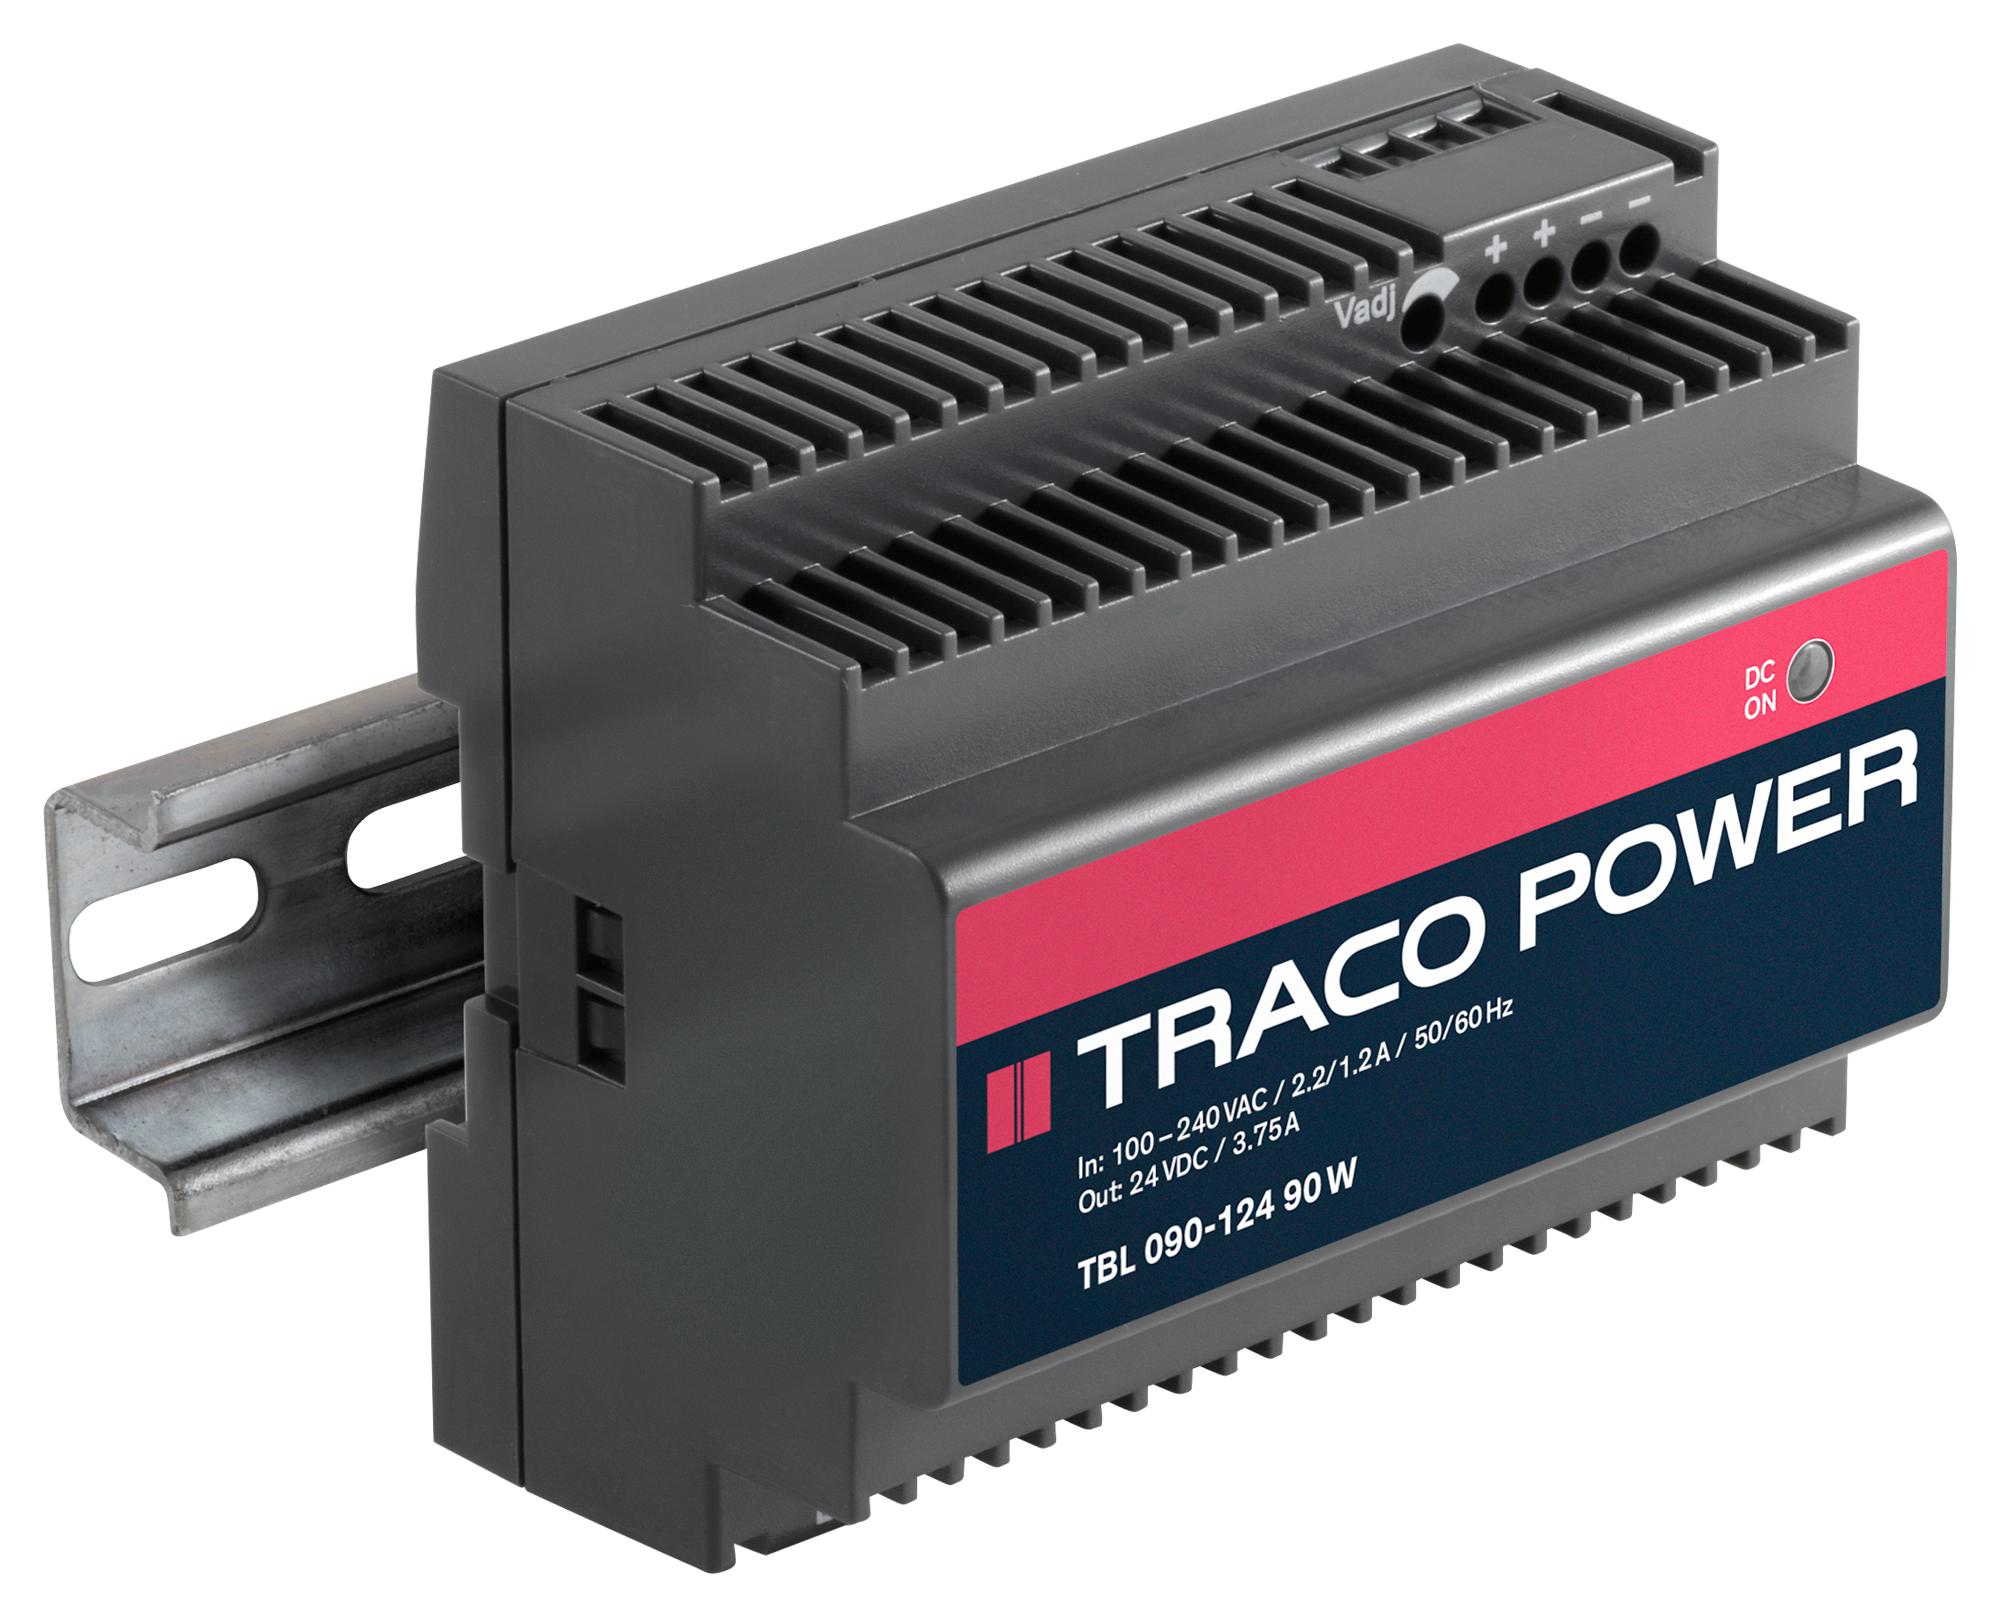 TRACO Power Tbl 090-112 Ac/dc, 12V/6A/90W, Din